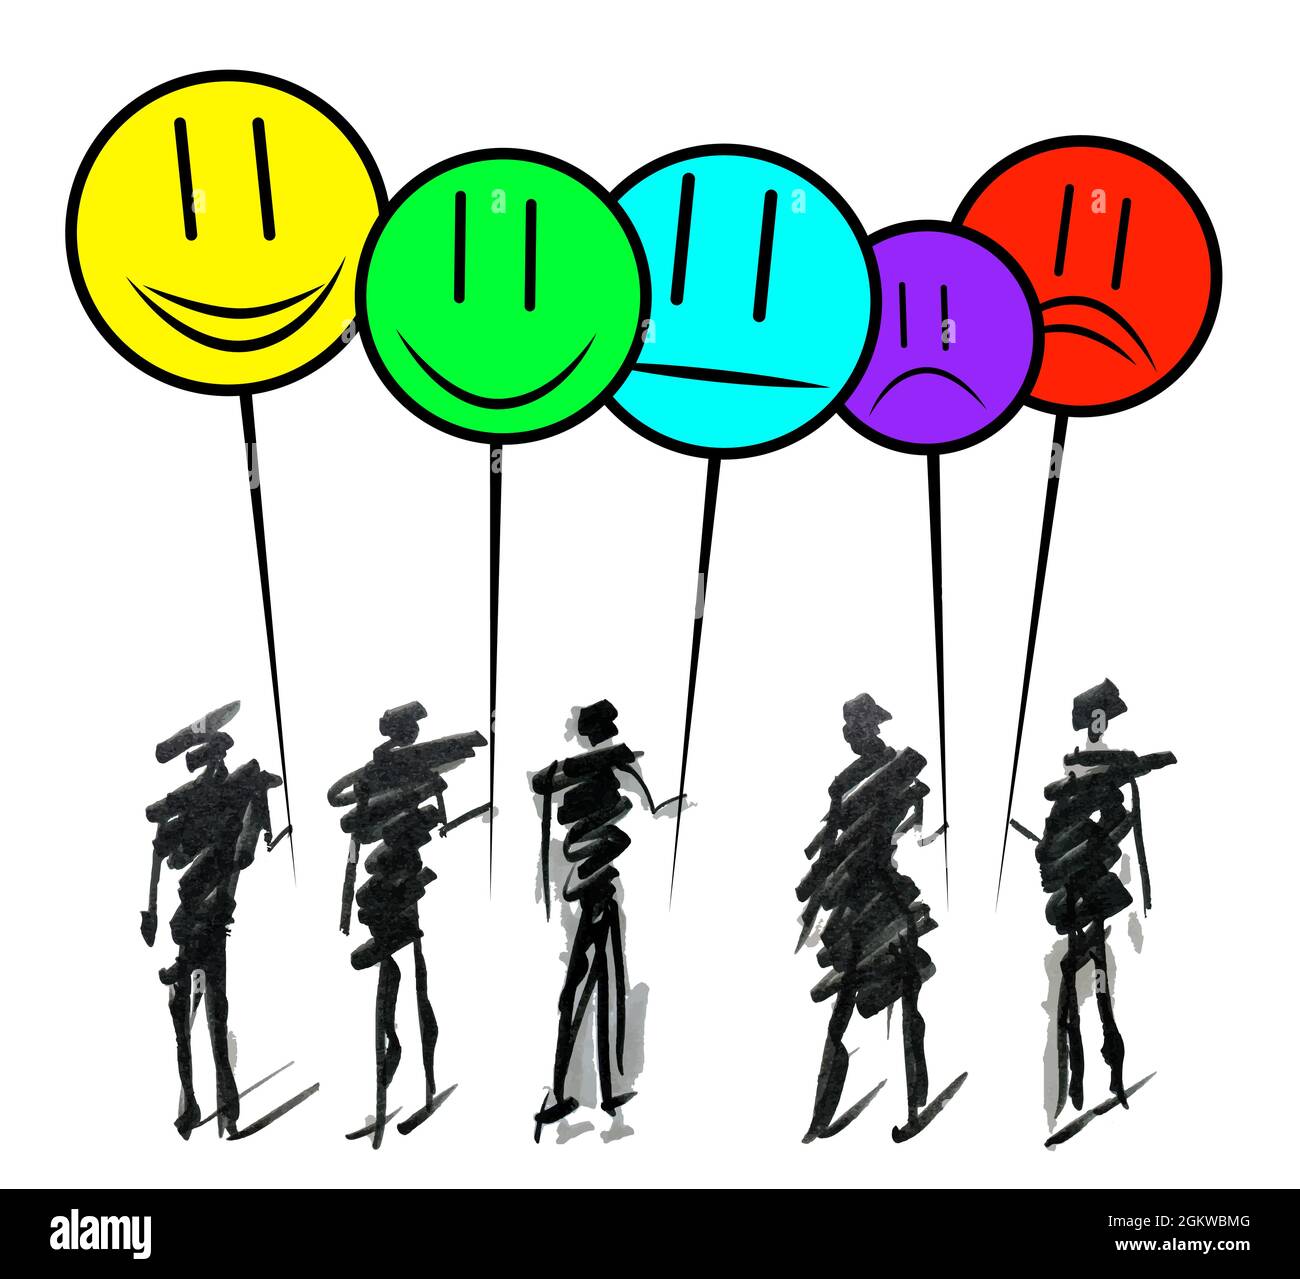 Dessin à la main Doodle Line art dessin animé dessin de personnages groupe de personnes tenant smileys emoji pour montrer la satisfaction positive, négative et neutre. Illustration de Vecteur